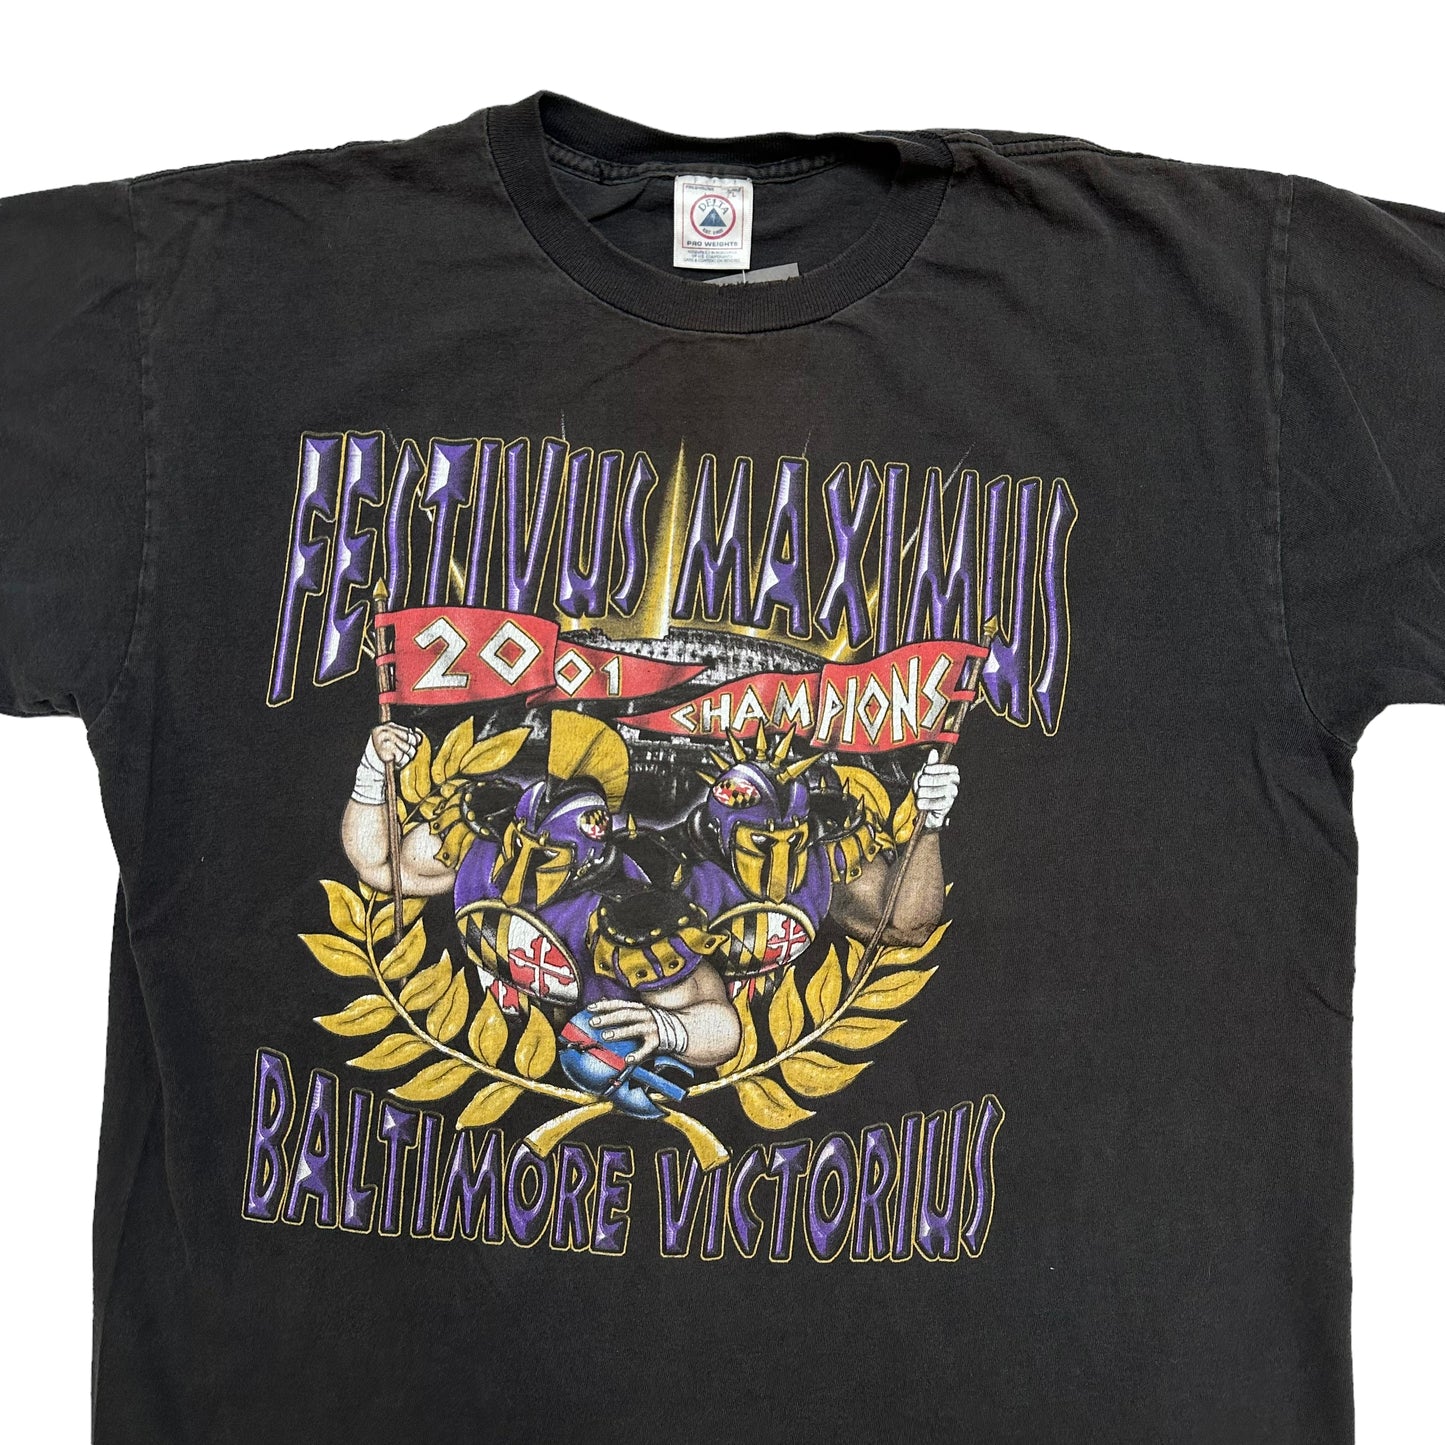 2001 Baltimore Ravens T-shirt Sz L (A2136)